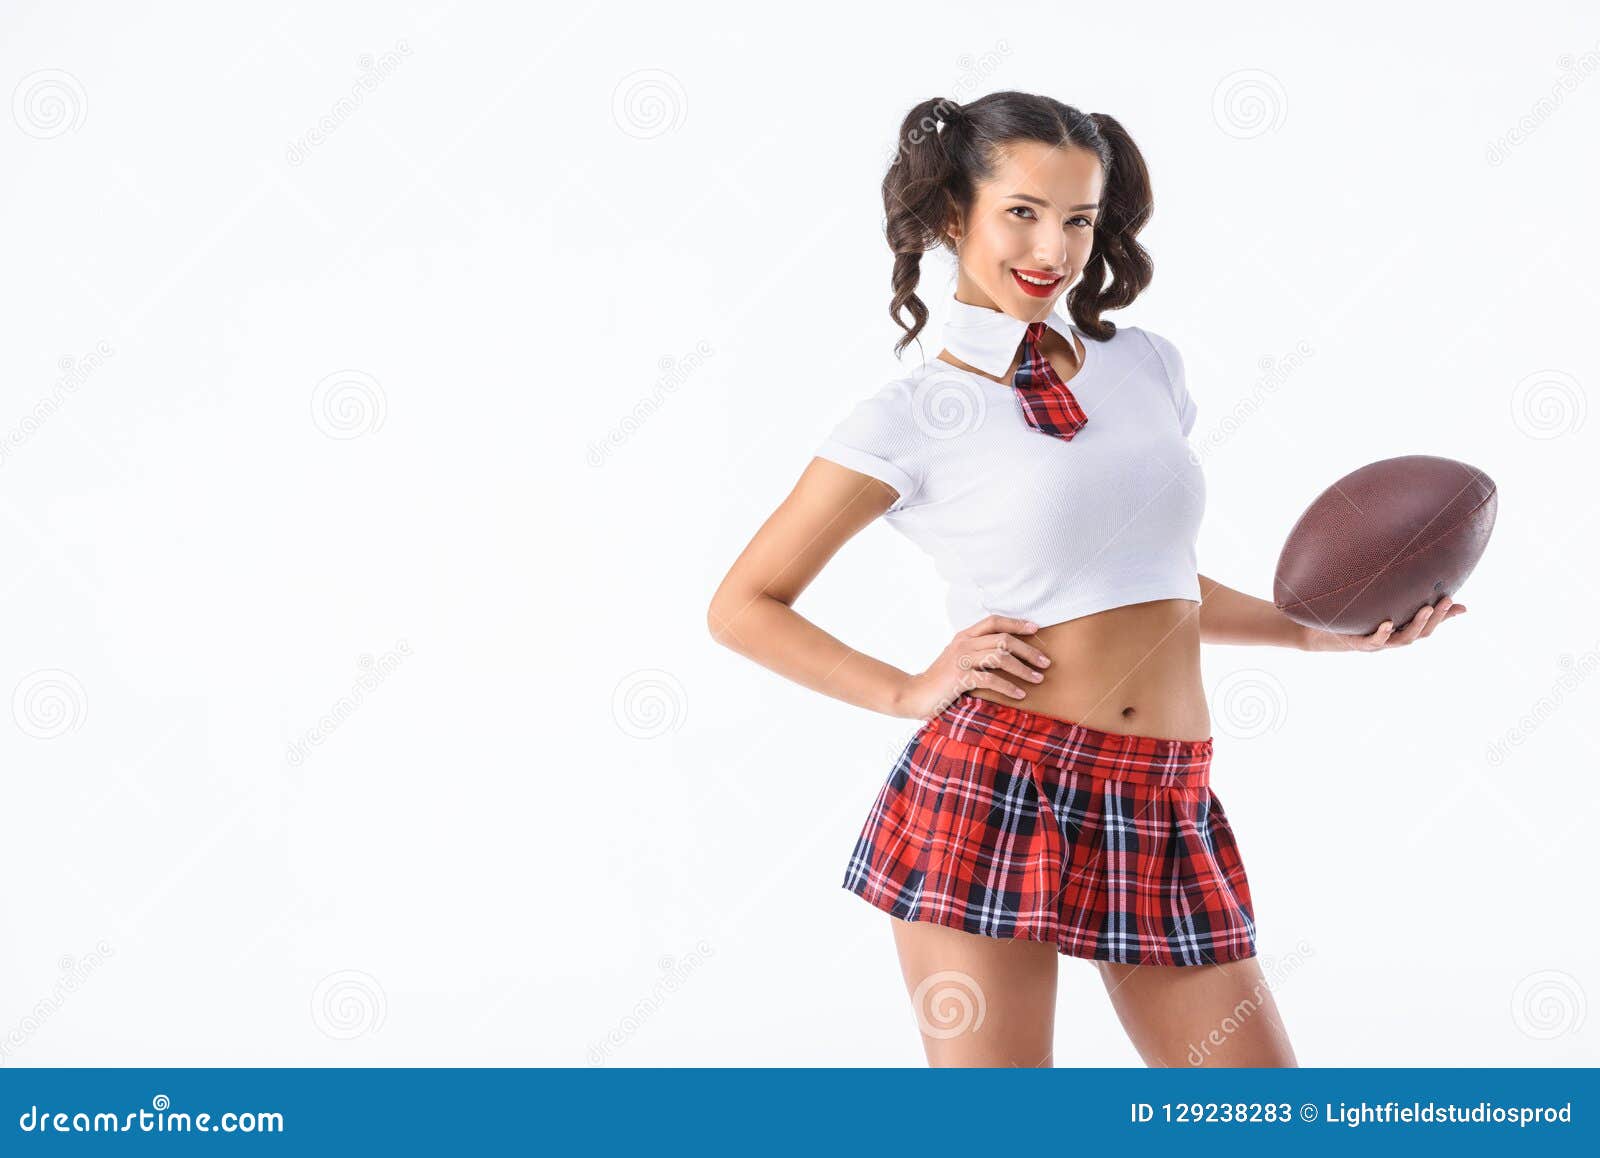 Best of Young sexy schoolgirl